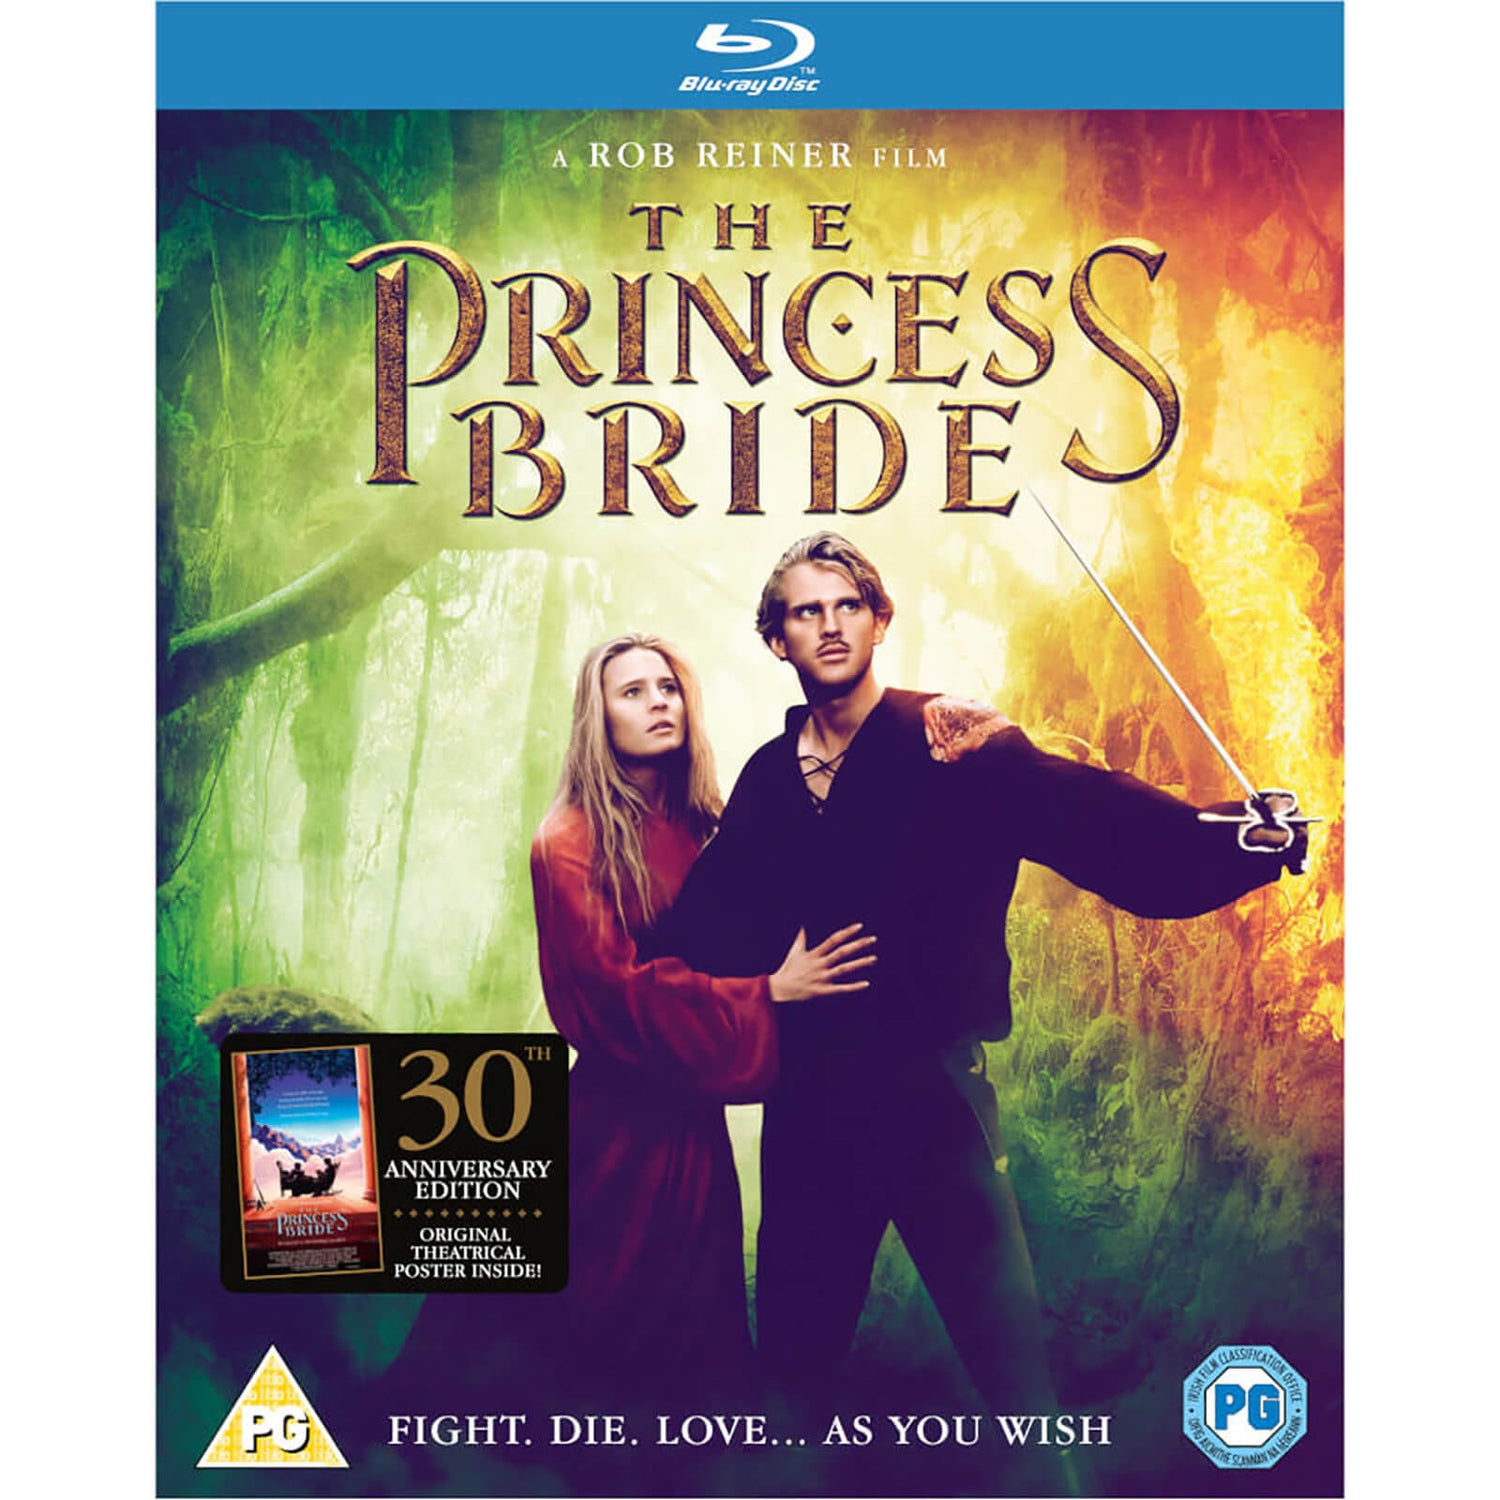 The Princess Bride 30th Anniversary Edition